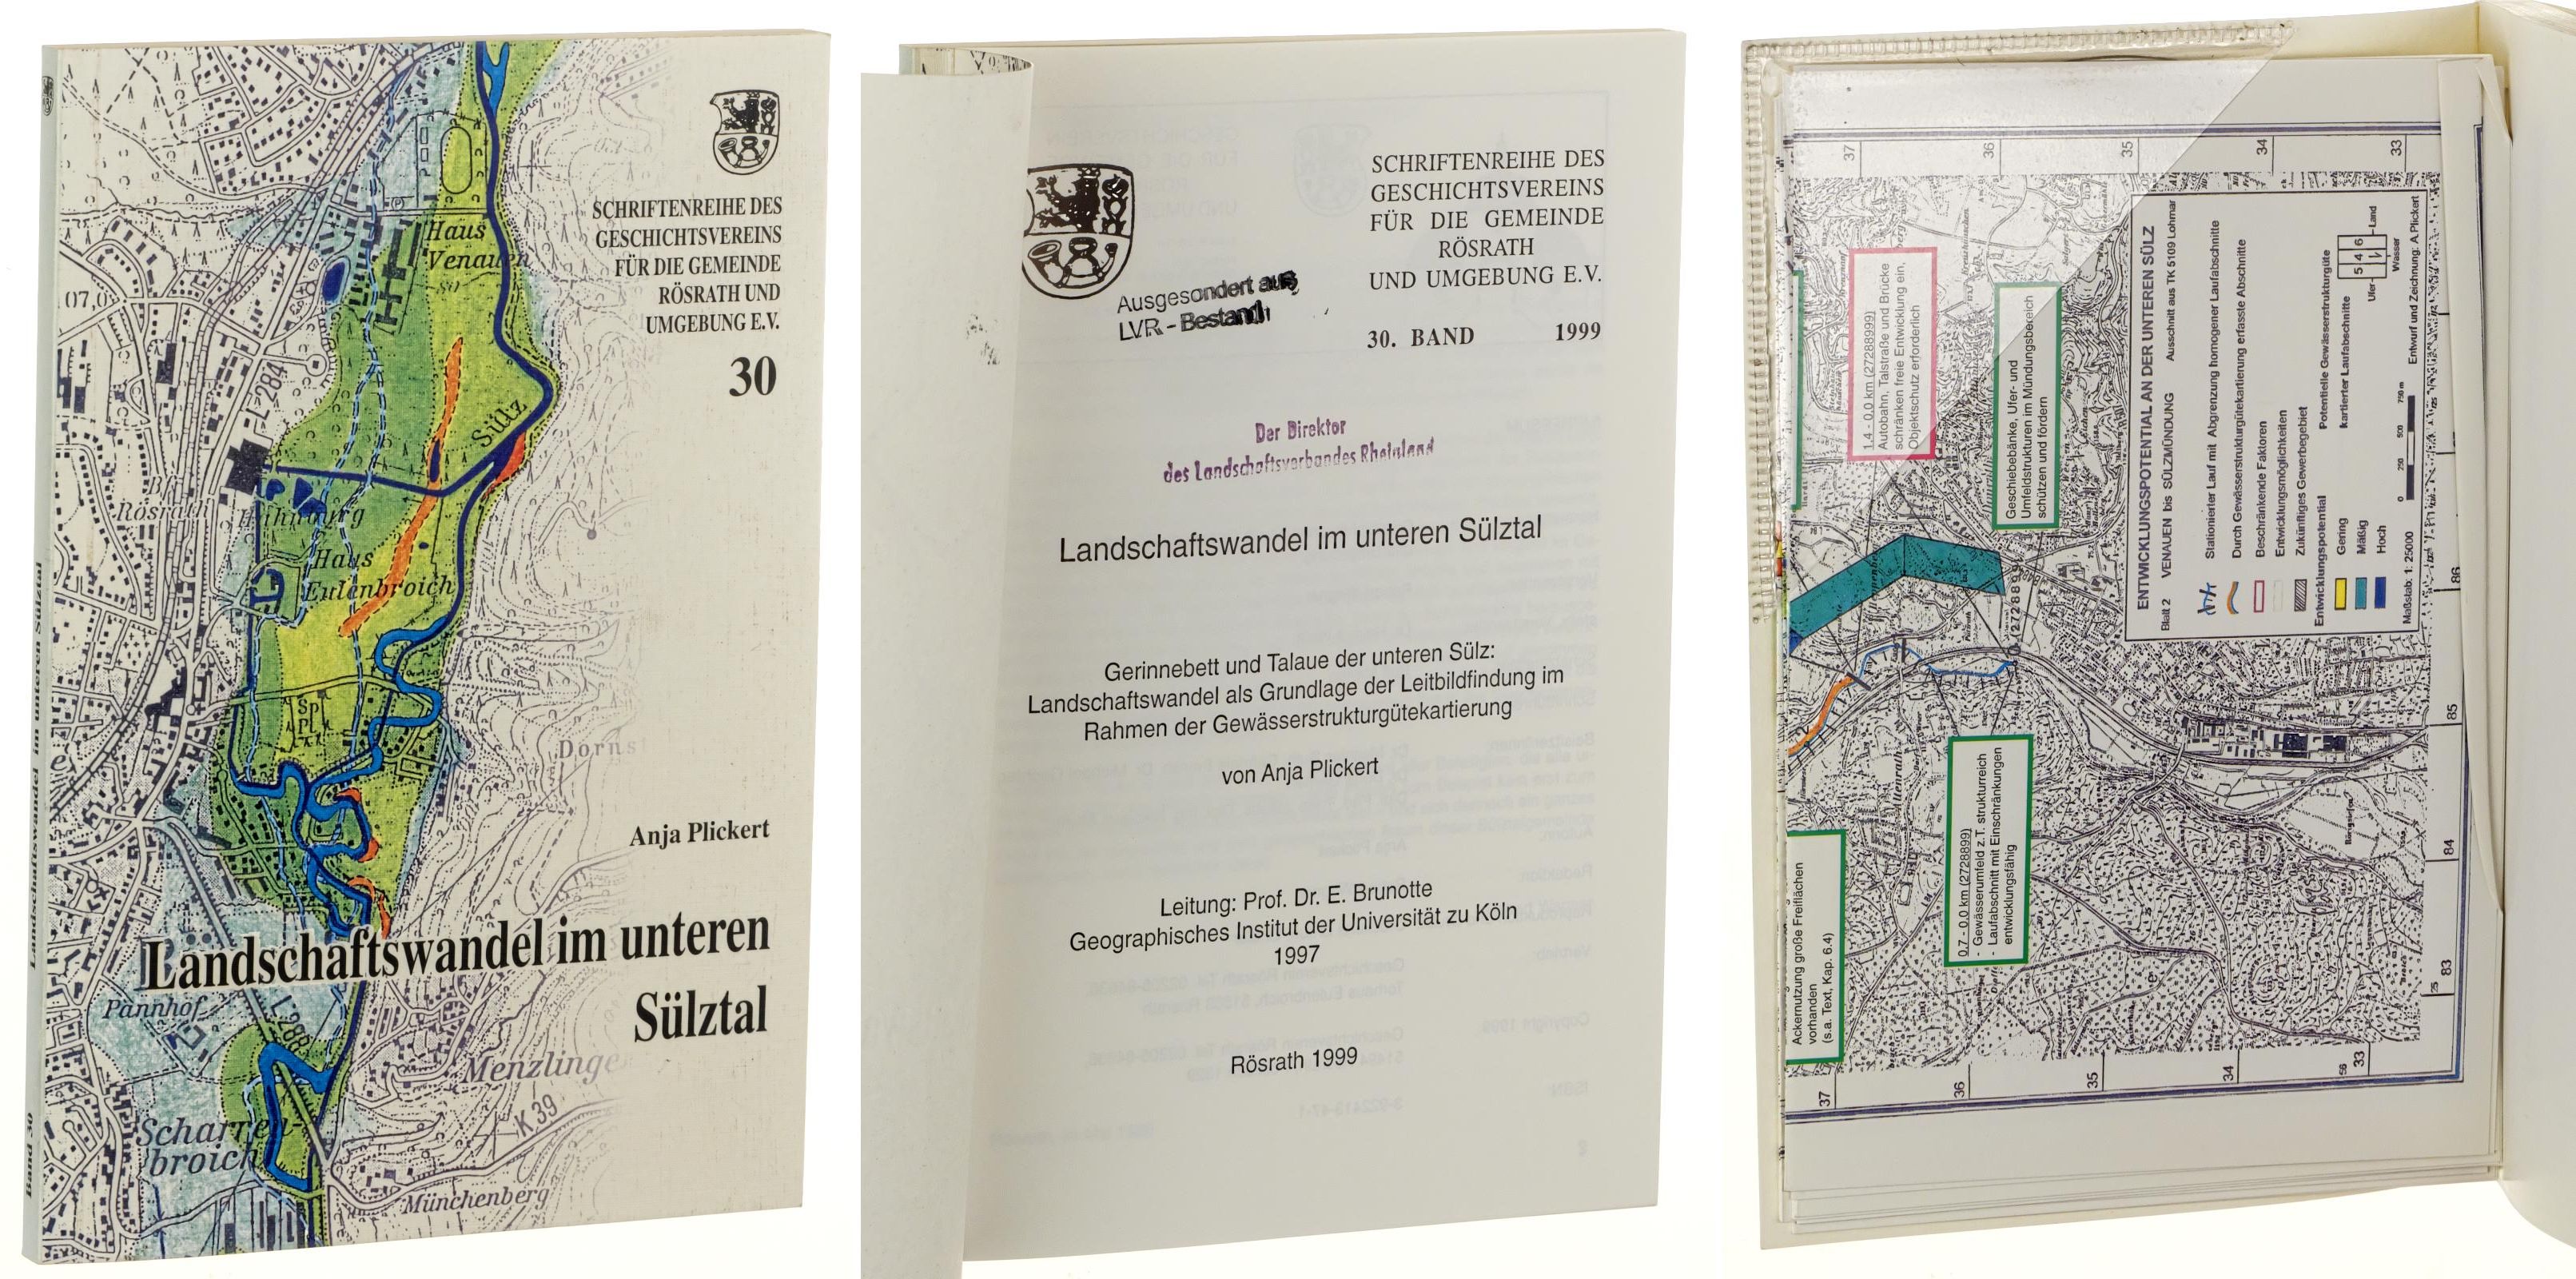   Schriftenreihe des Geschichtsvereins für die Gemeinde Rösrath und Umgebung e.V. Band 30 (1999): Landschaftswandel im unteren Sülztal, 